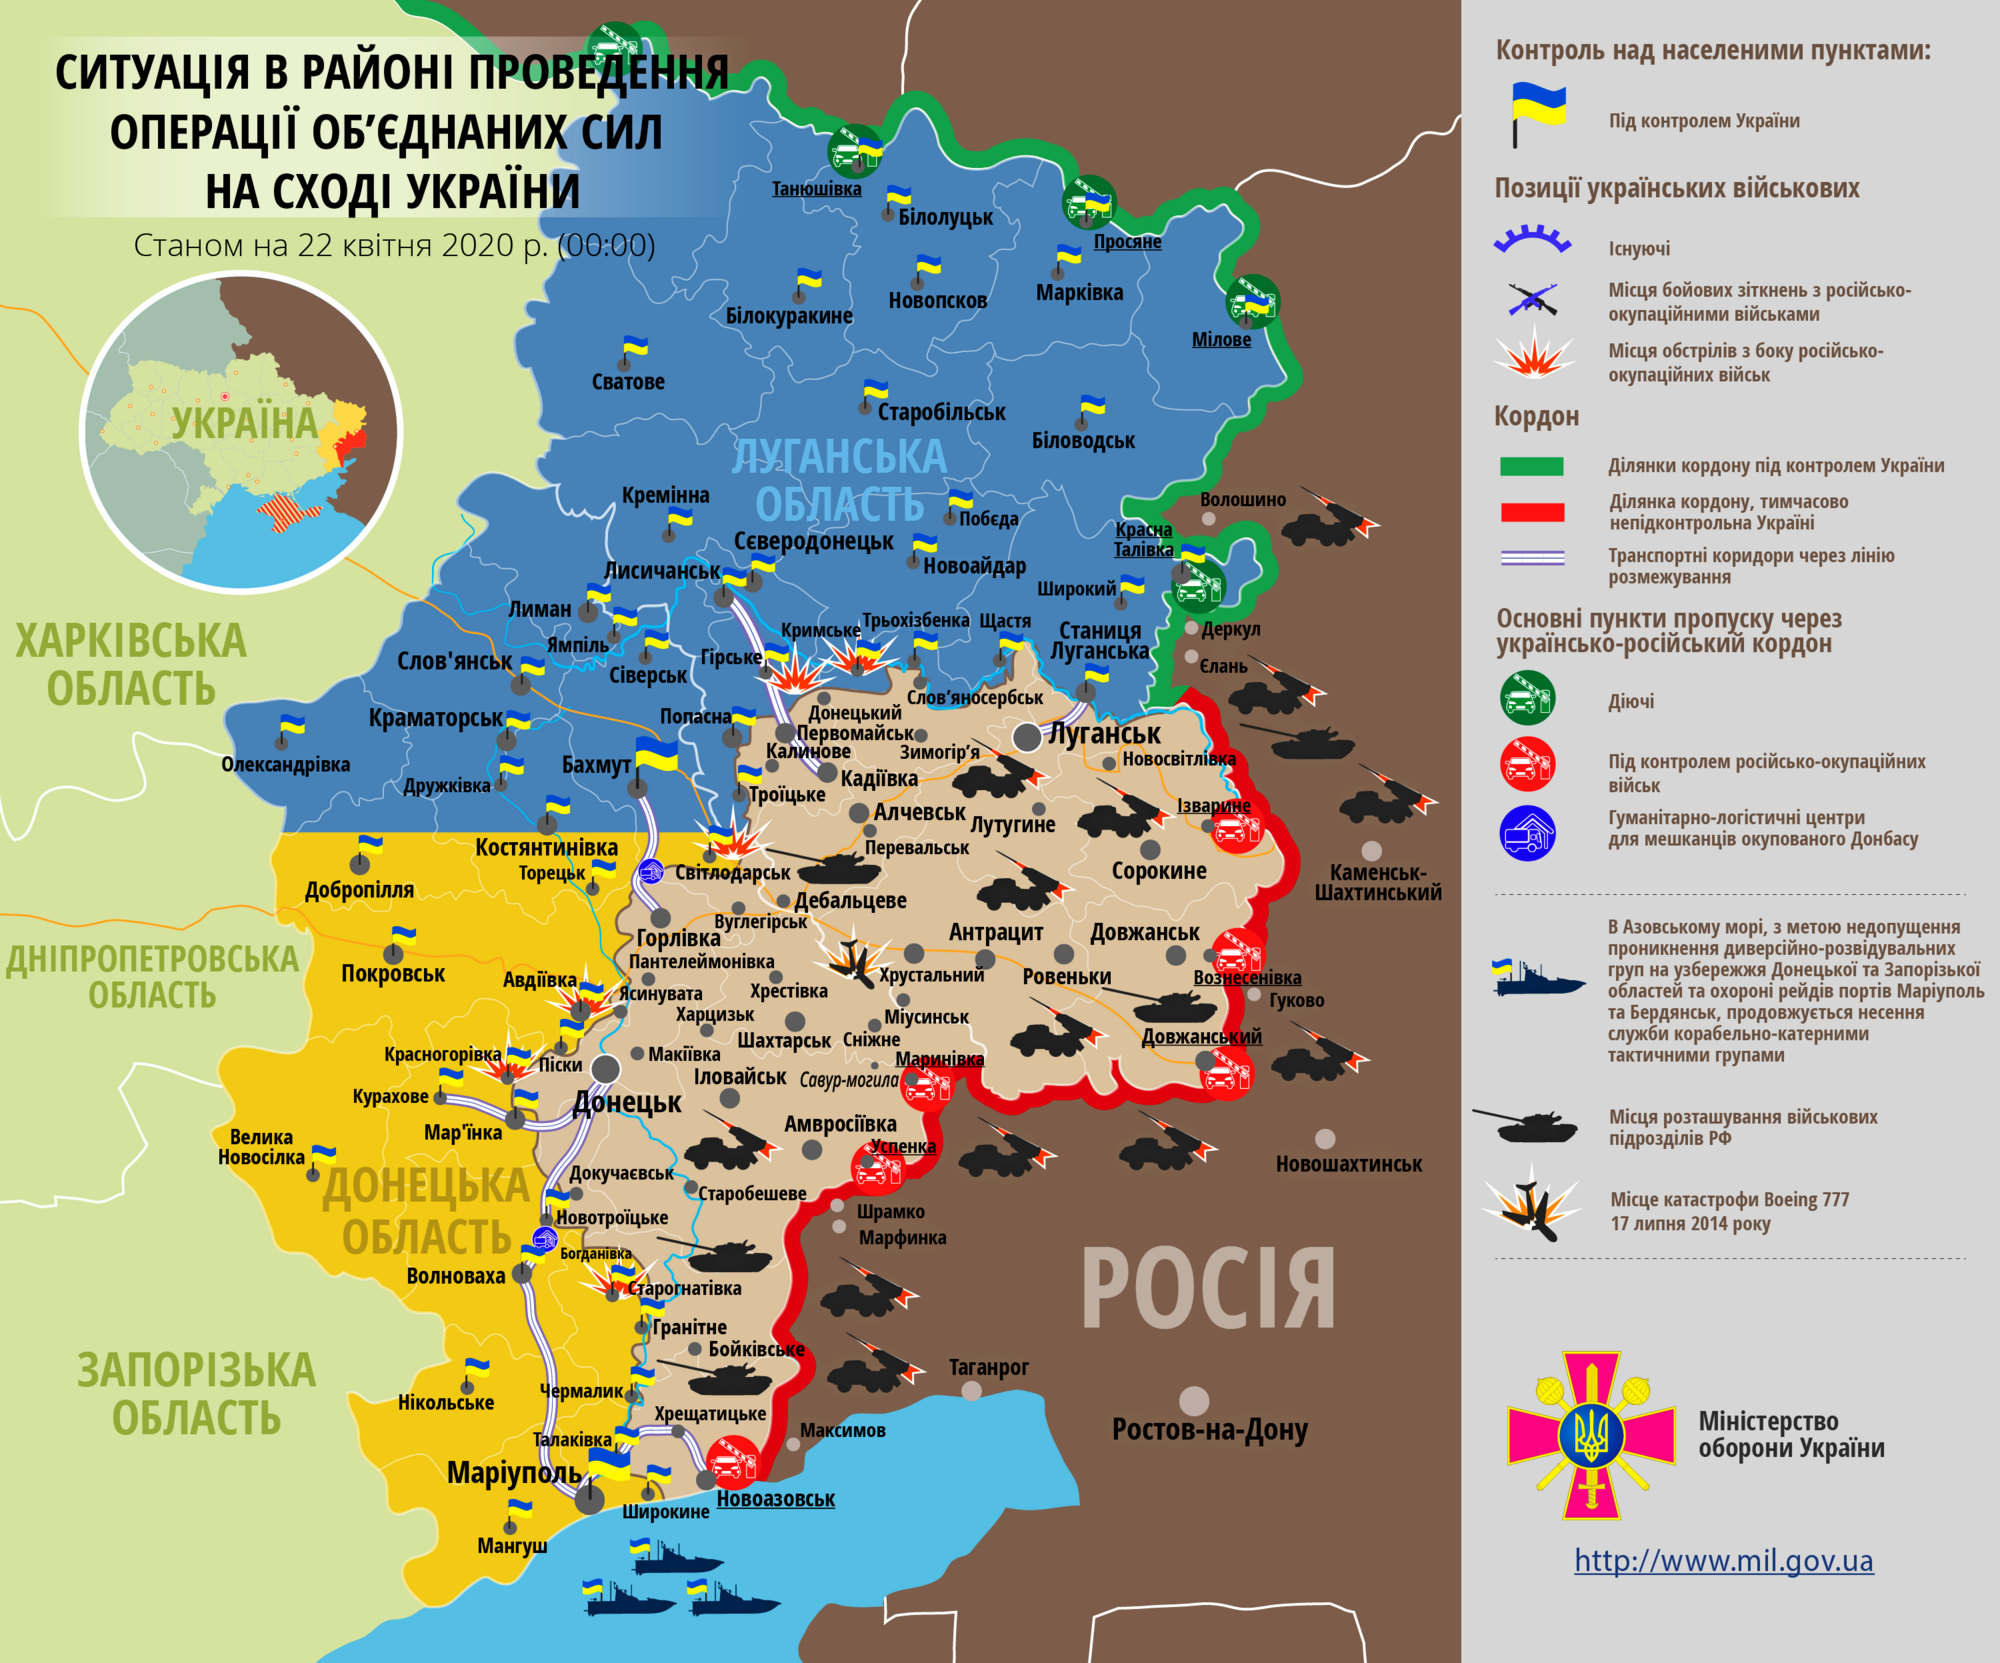 Ситуація в зоні проведення ООС на Донбасі 22 квітня